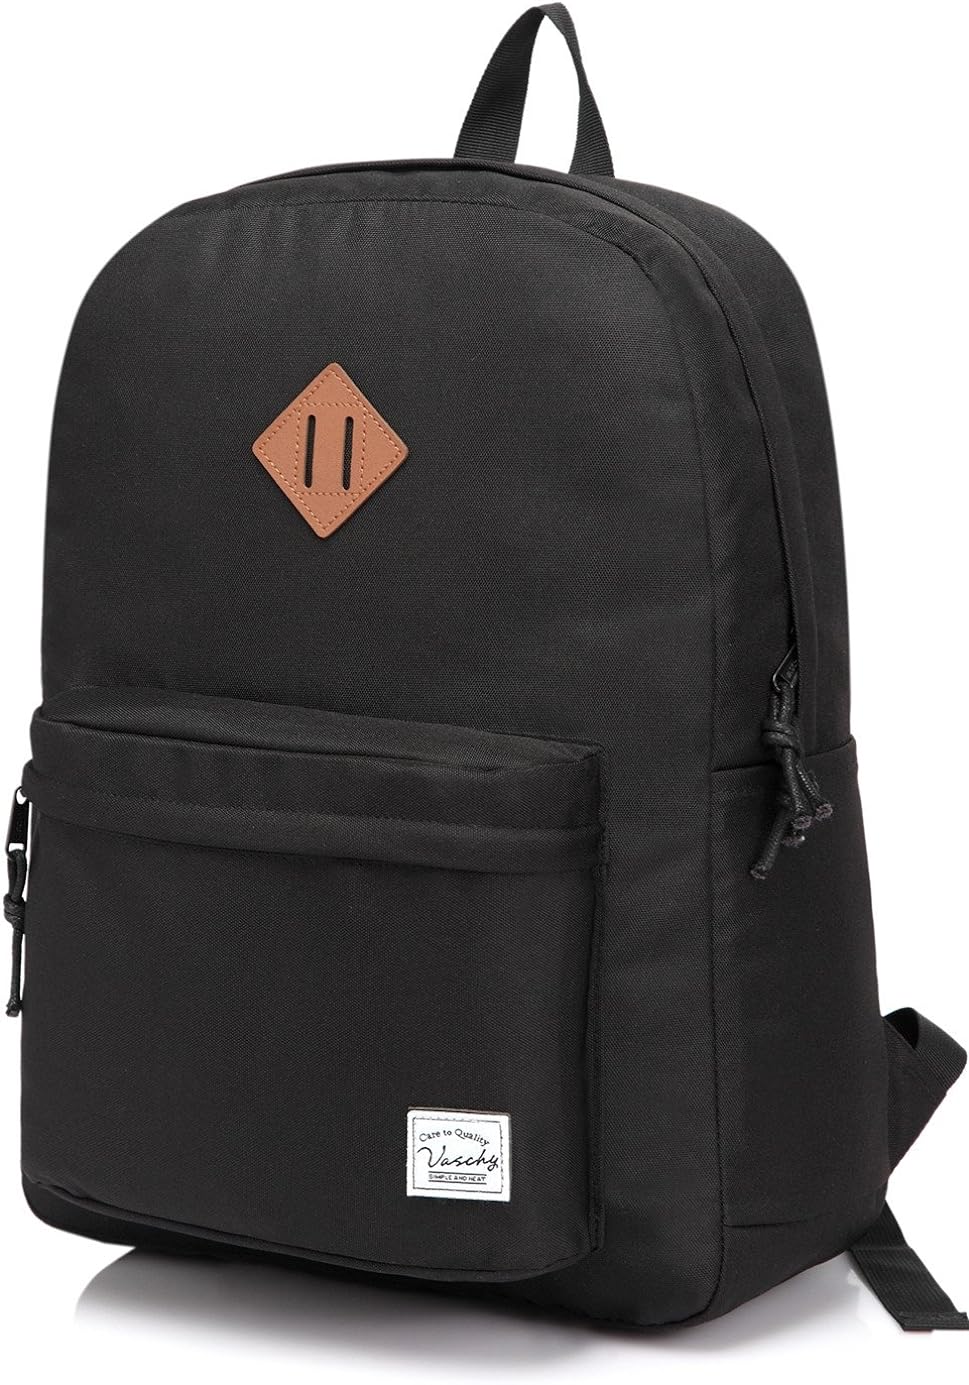 Lil Xan Travel Laptop School Backpack Casual Backpack Lightweight Backpack with Bottle Side Pockets Adjustable Shoulder Straps